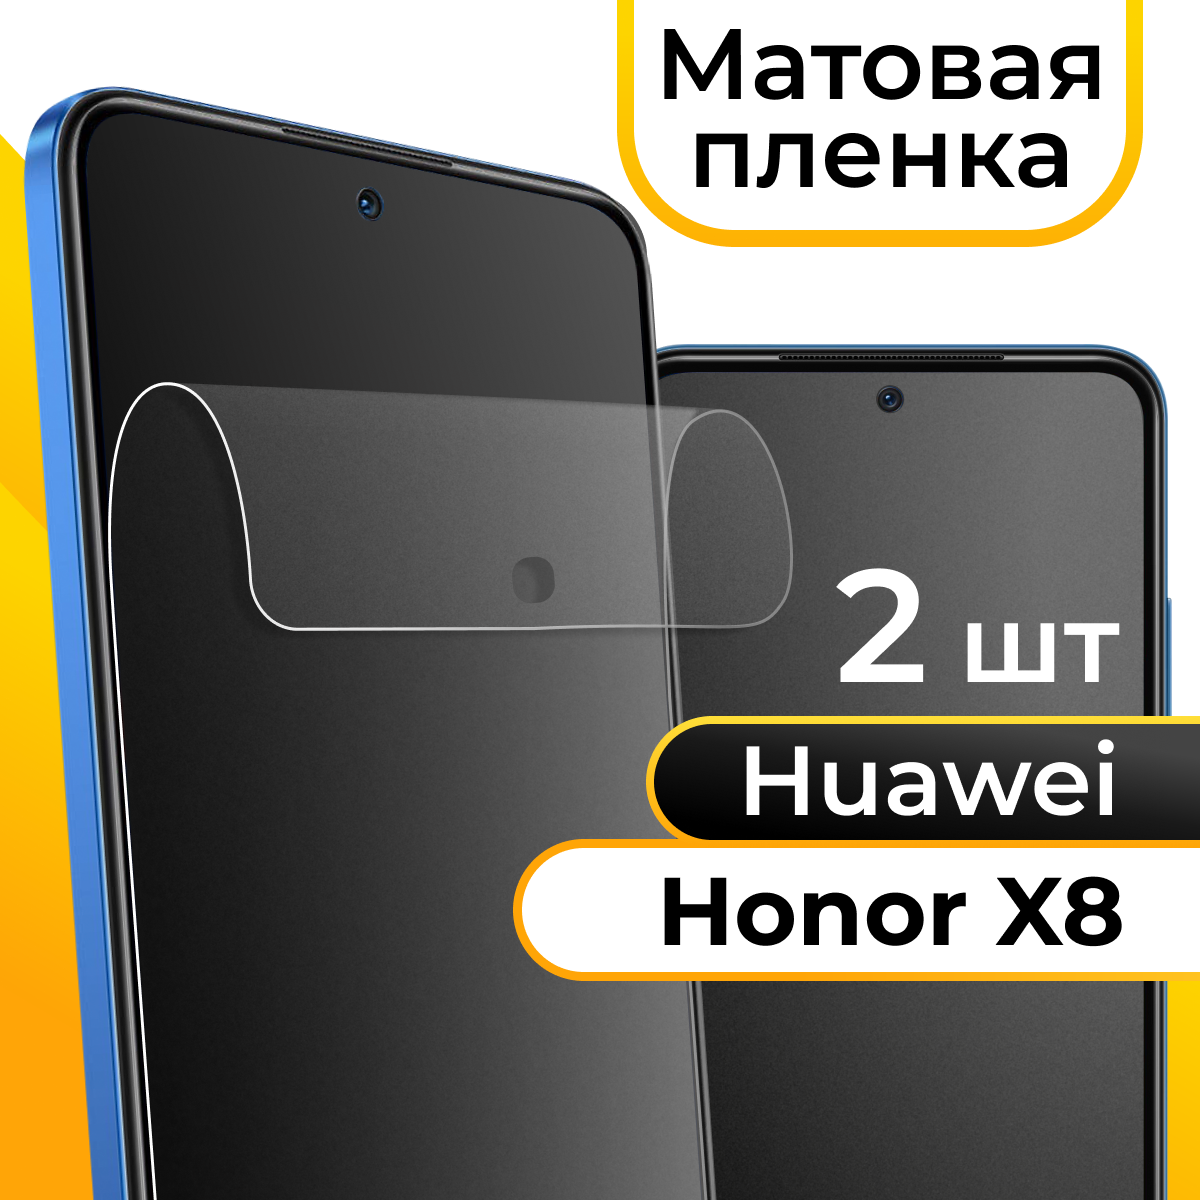 Комплект 2 шт. Матовая пленка для смартфона Huawei Honor X8 / Защитная противоударная пленка на телефон Хуавей Хонор Х8 / Гидрогелевая самовосстанавливающаяся пленка